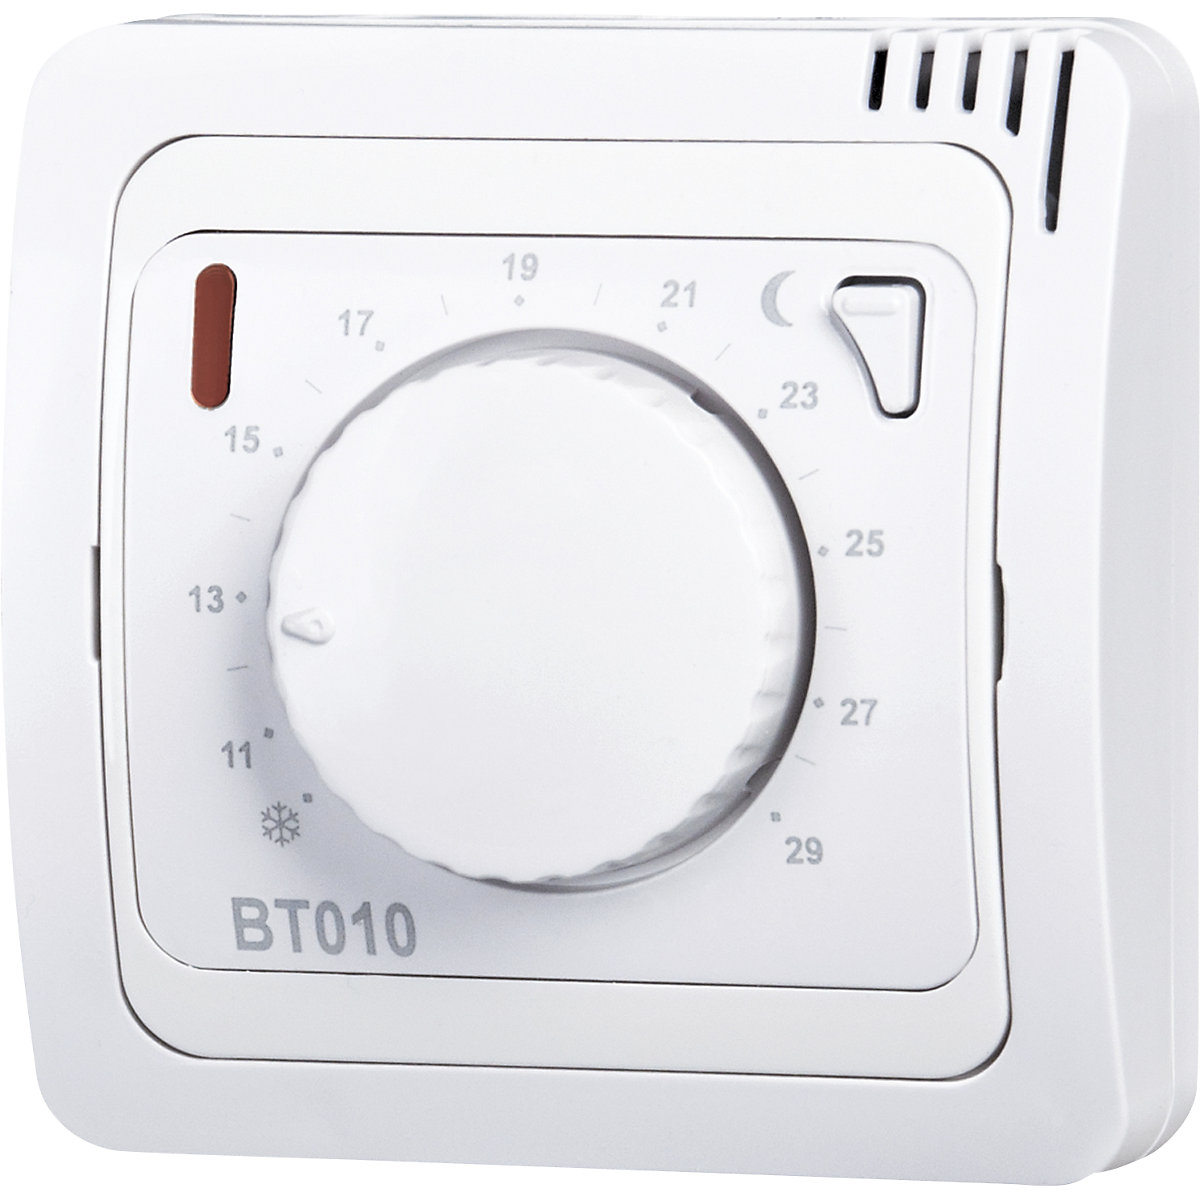 Rádiový izbový termostat BT010